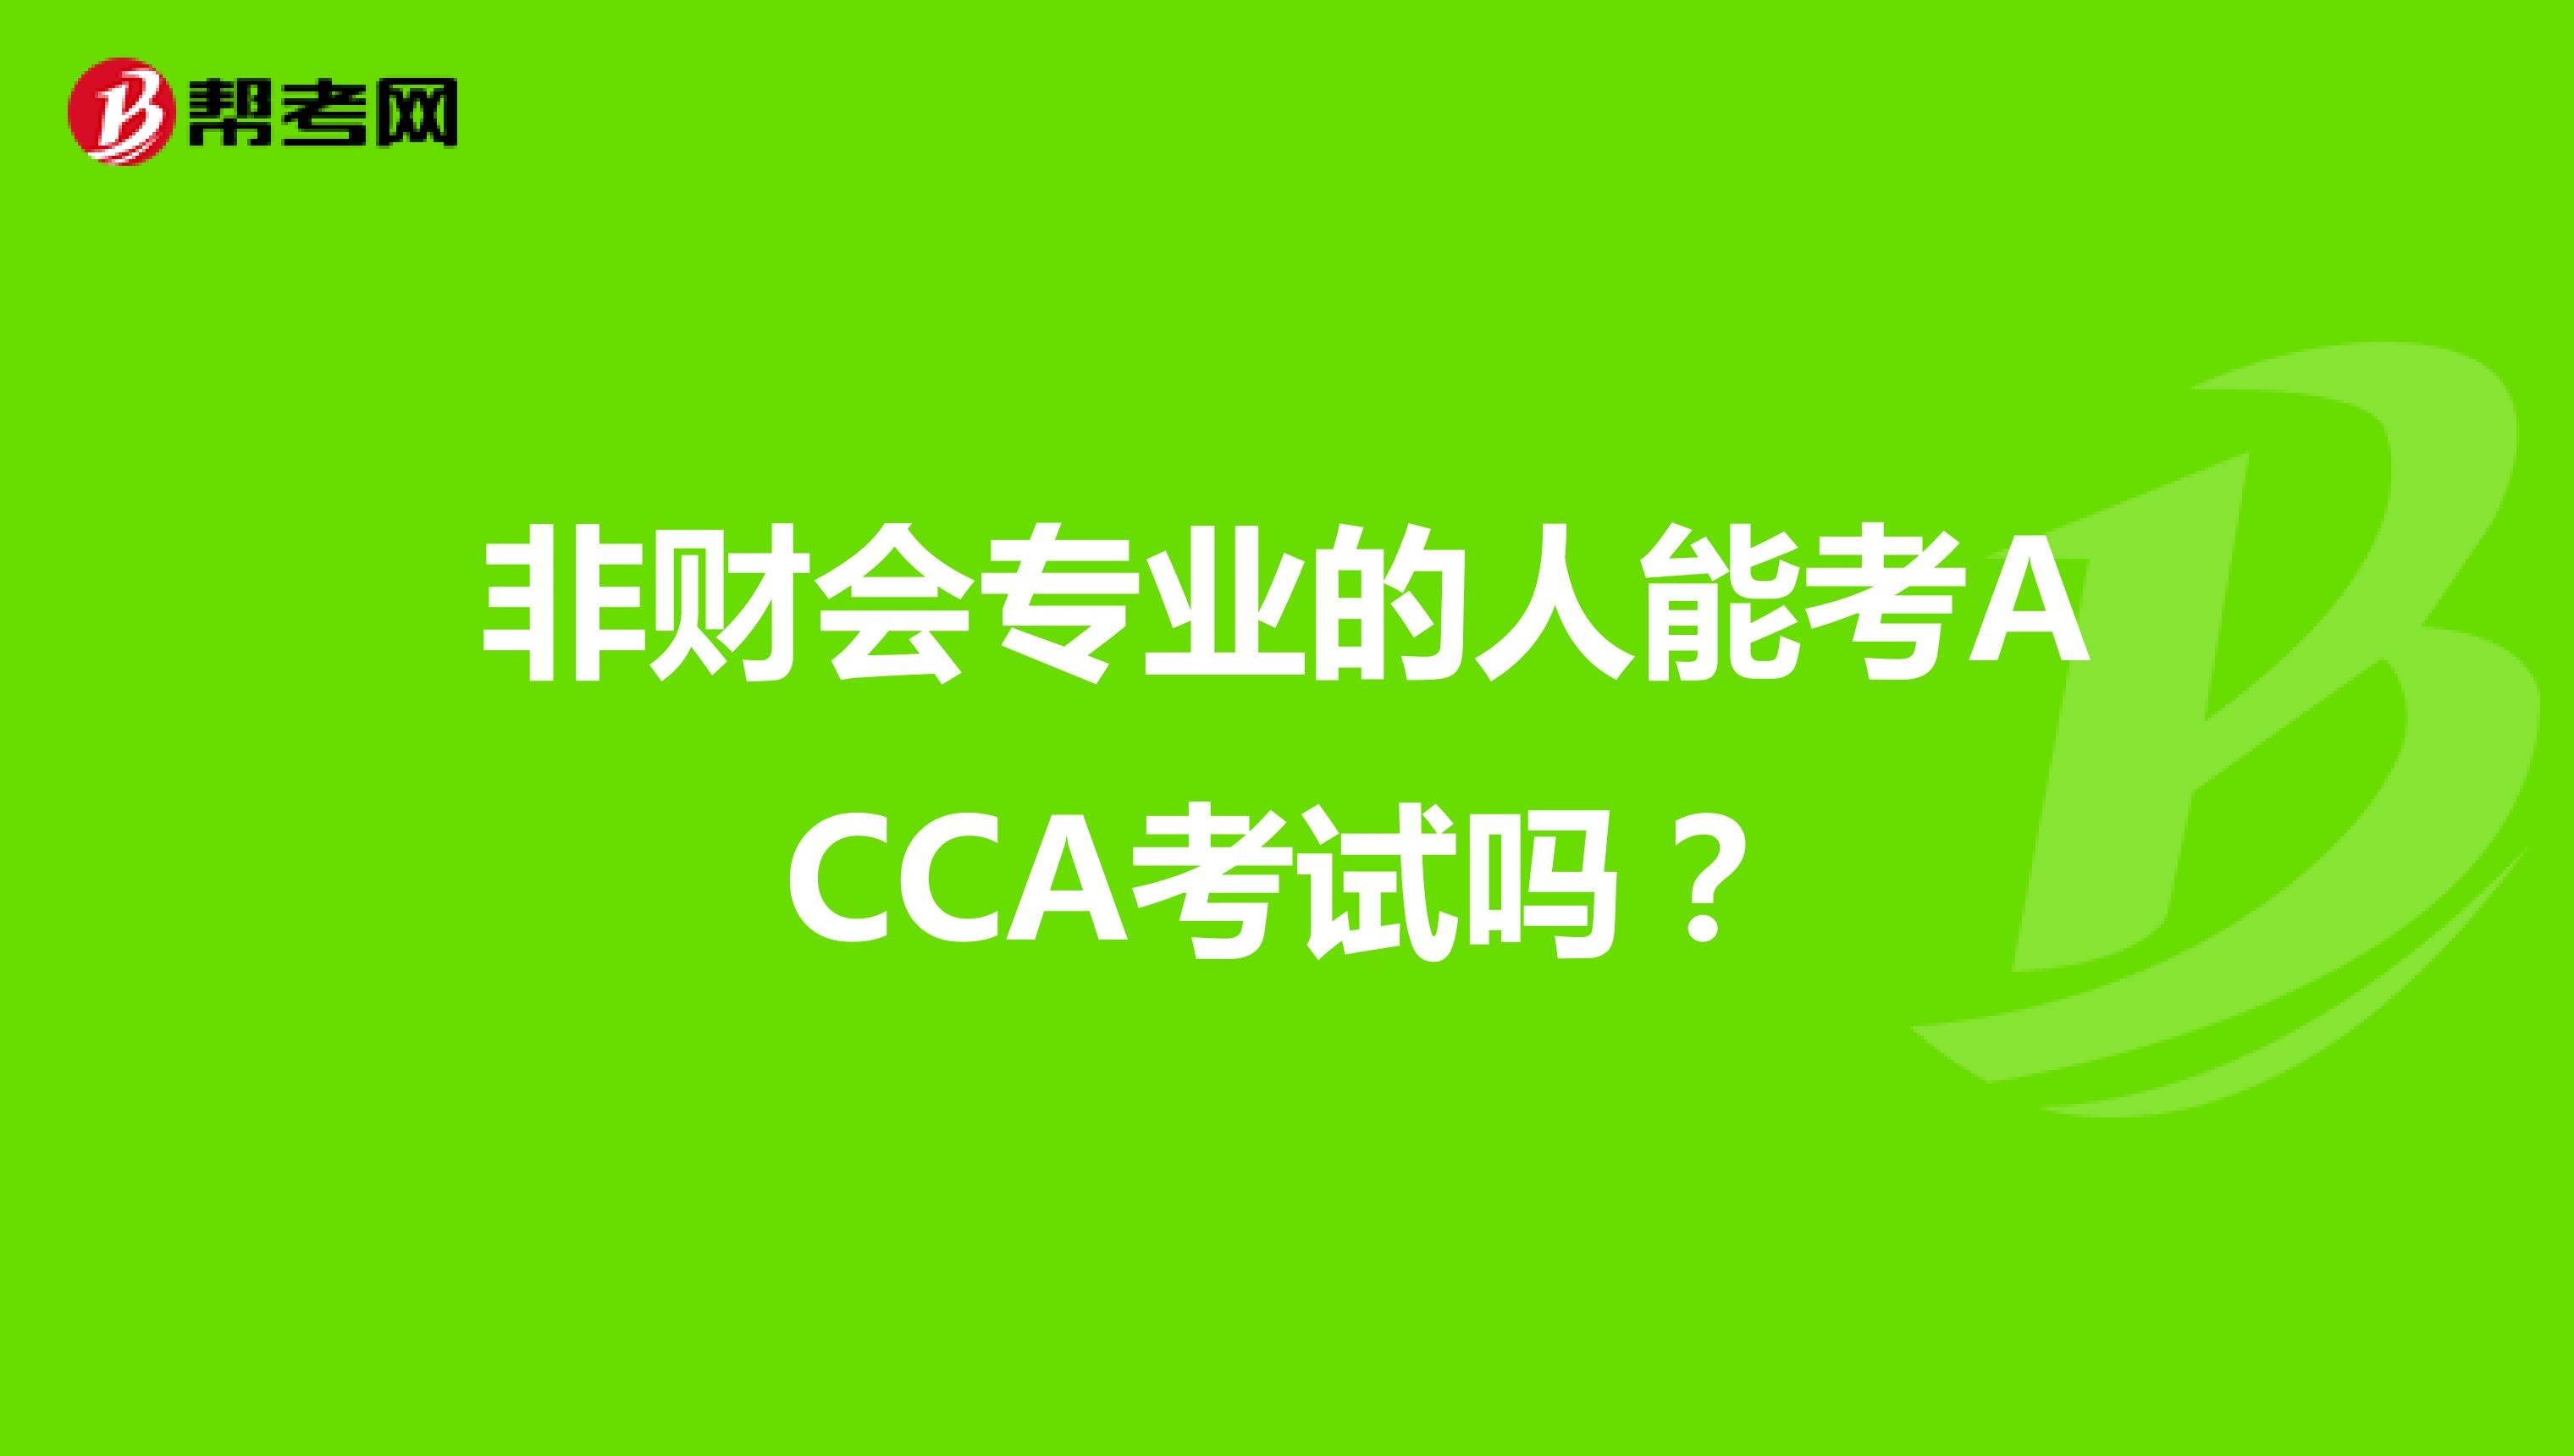 非财会专业的人能考ACCA考试吗？